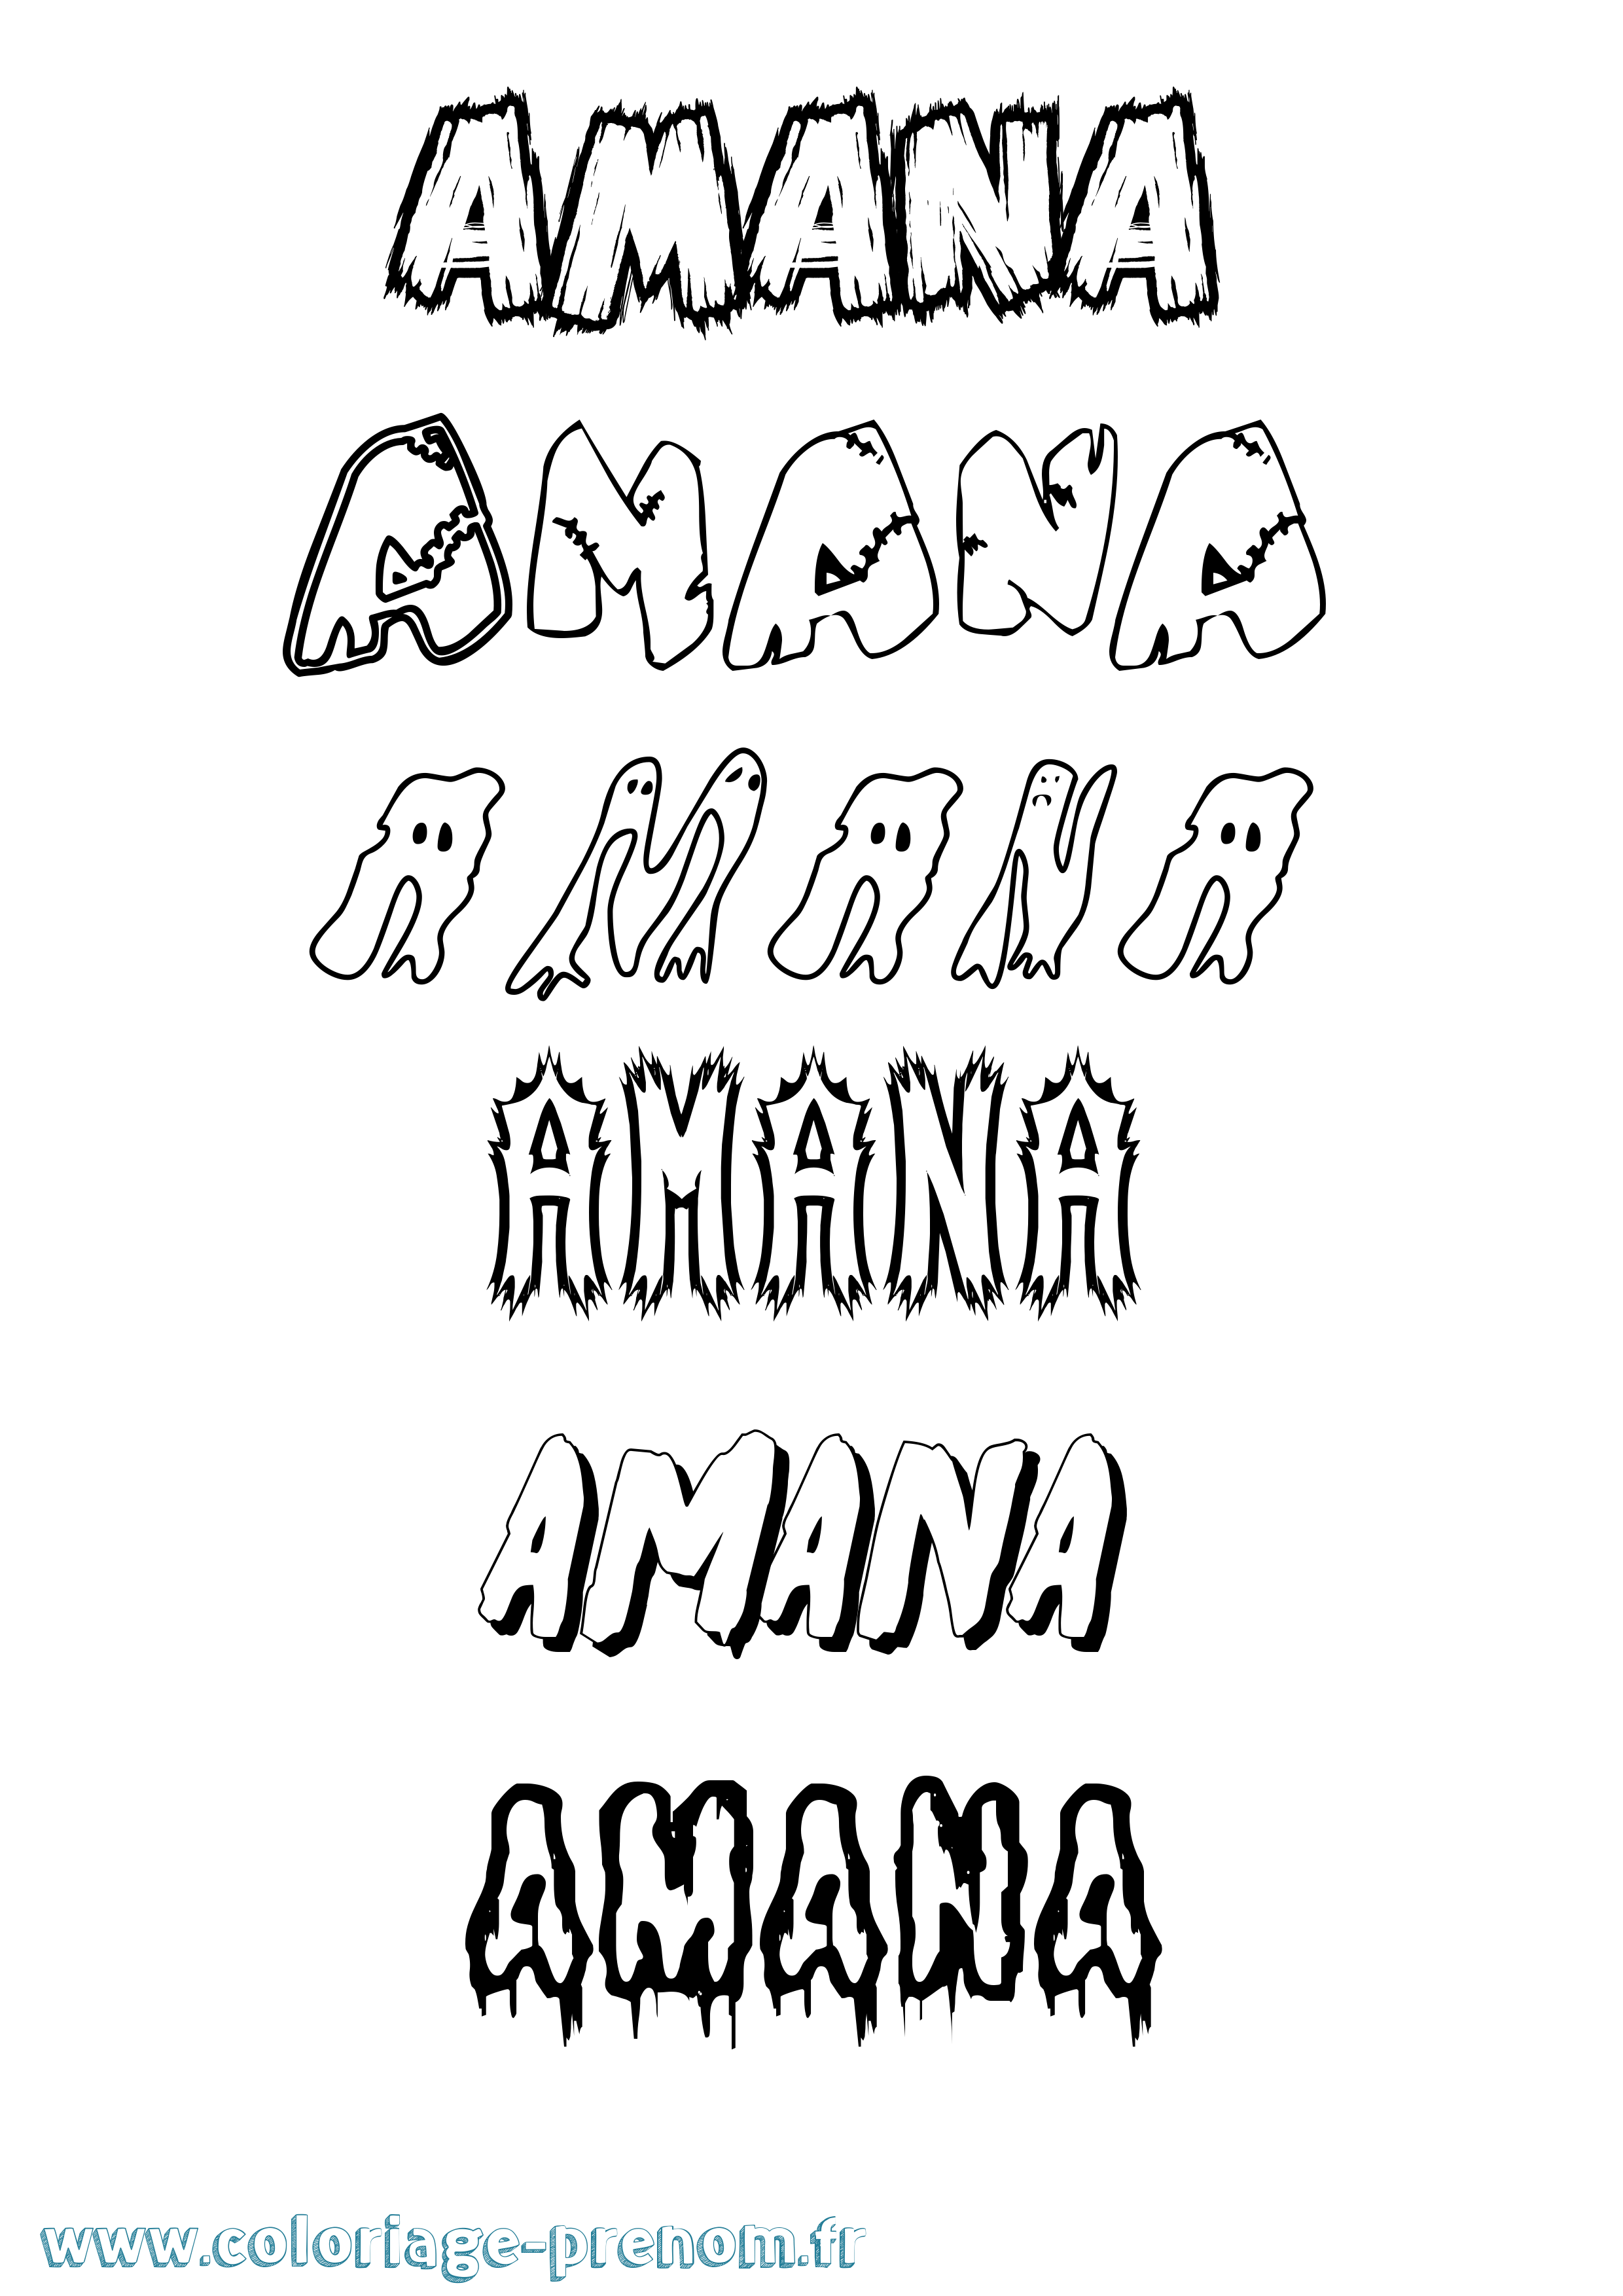 Coloriage prénom Amana Frisson